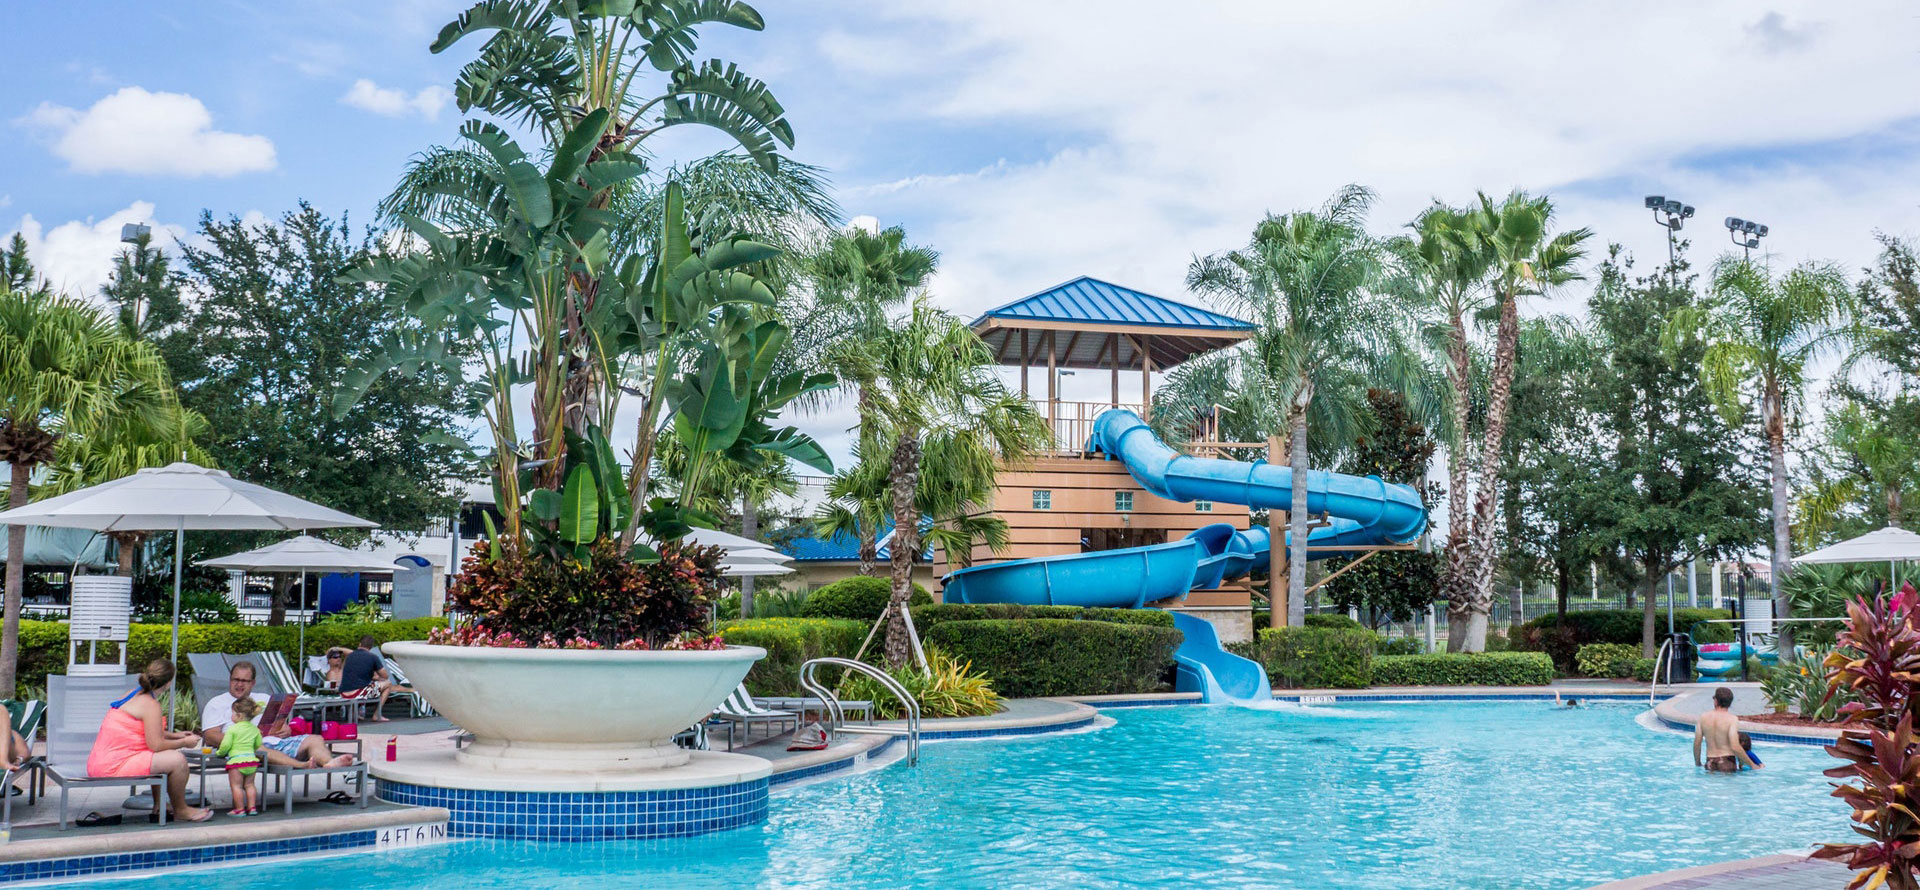 Jamaica vs cancun swimming pool in resort.